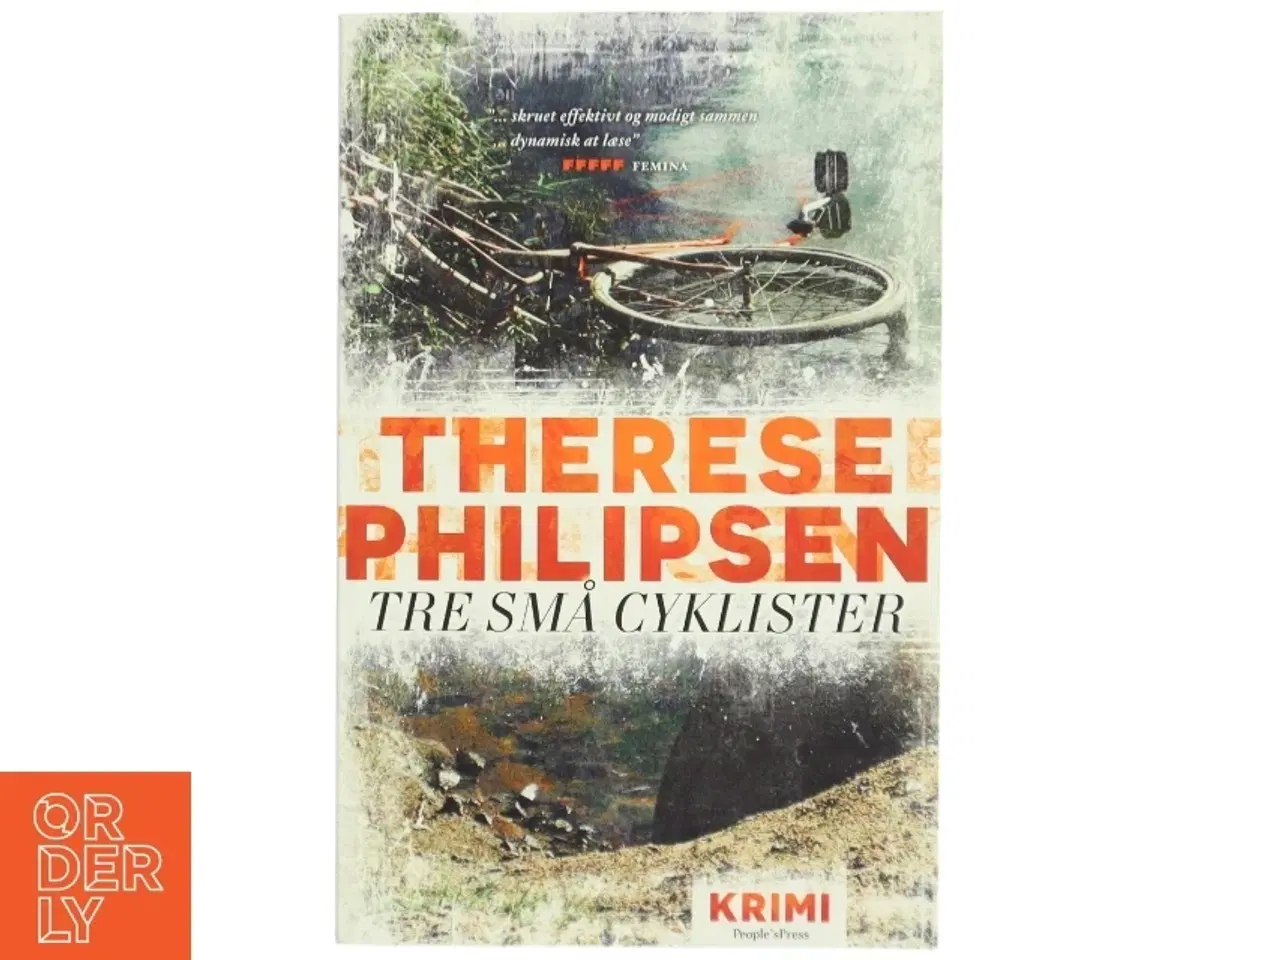 Billede 1 - 'Tre små cyklister: krimi' af Therese Philipsen (bog)